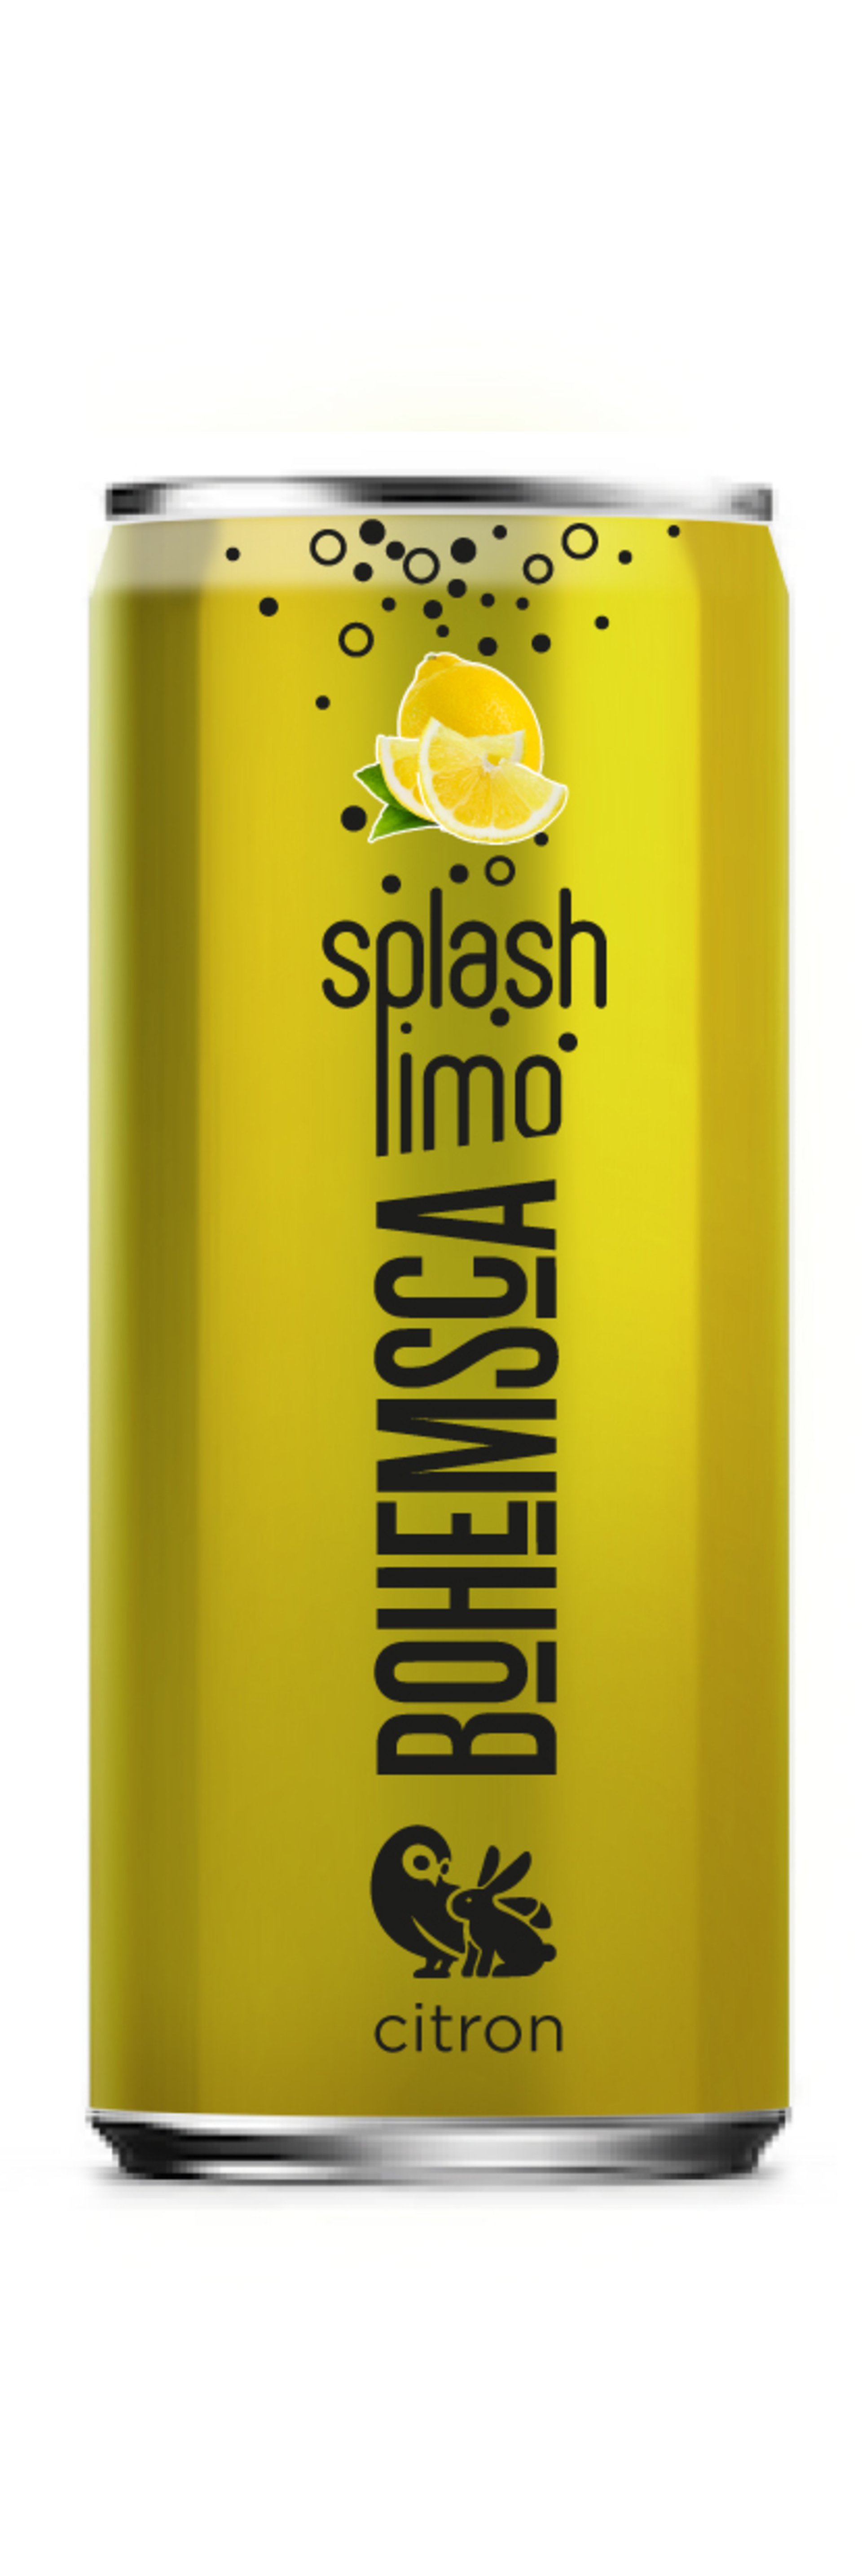 E-shop Bohemsca Splash limonáda citrón plech 250 ml